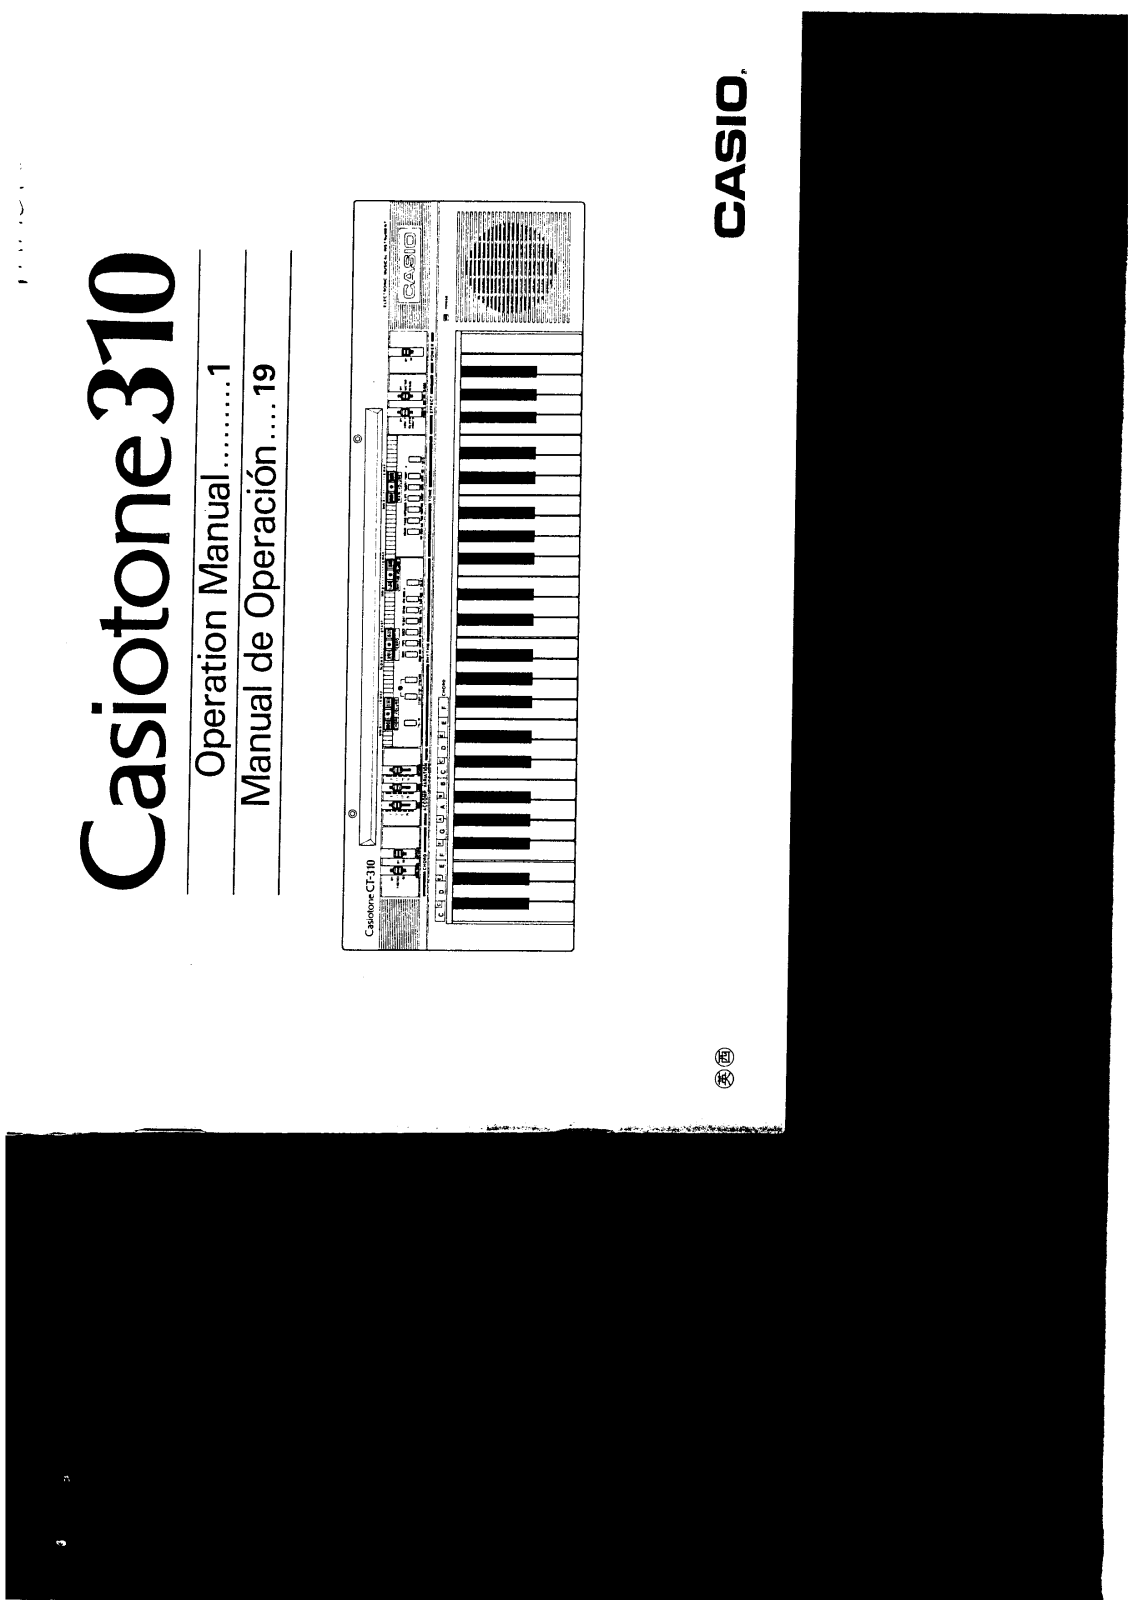 Casio CT-310 User Manual